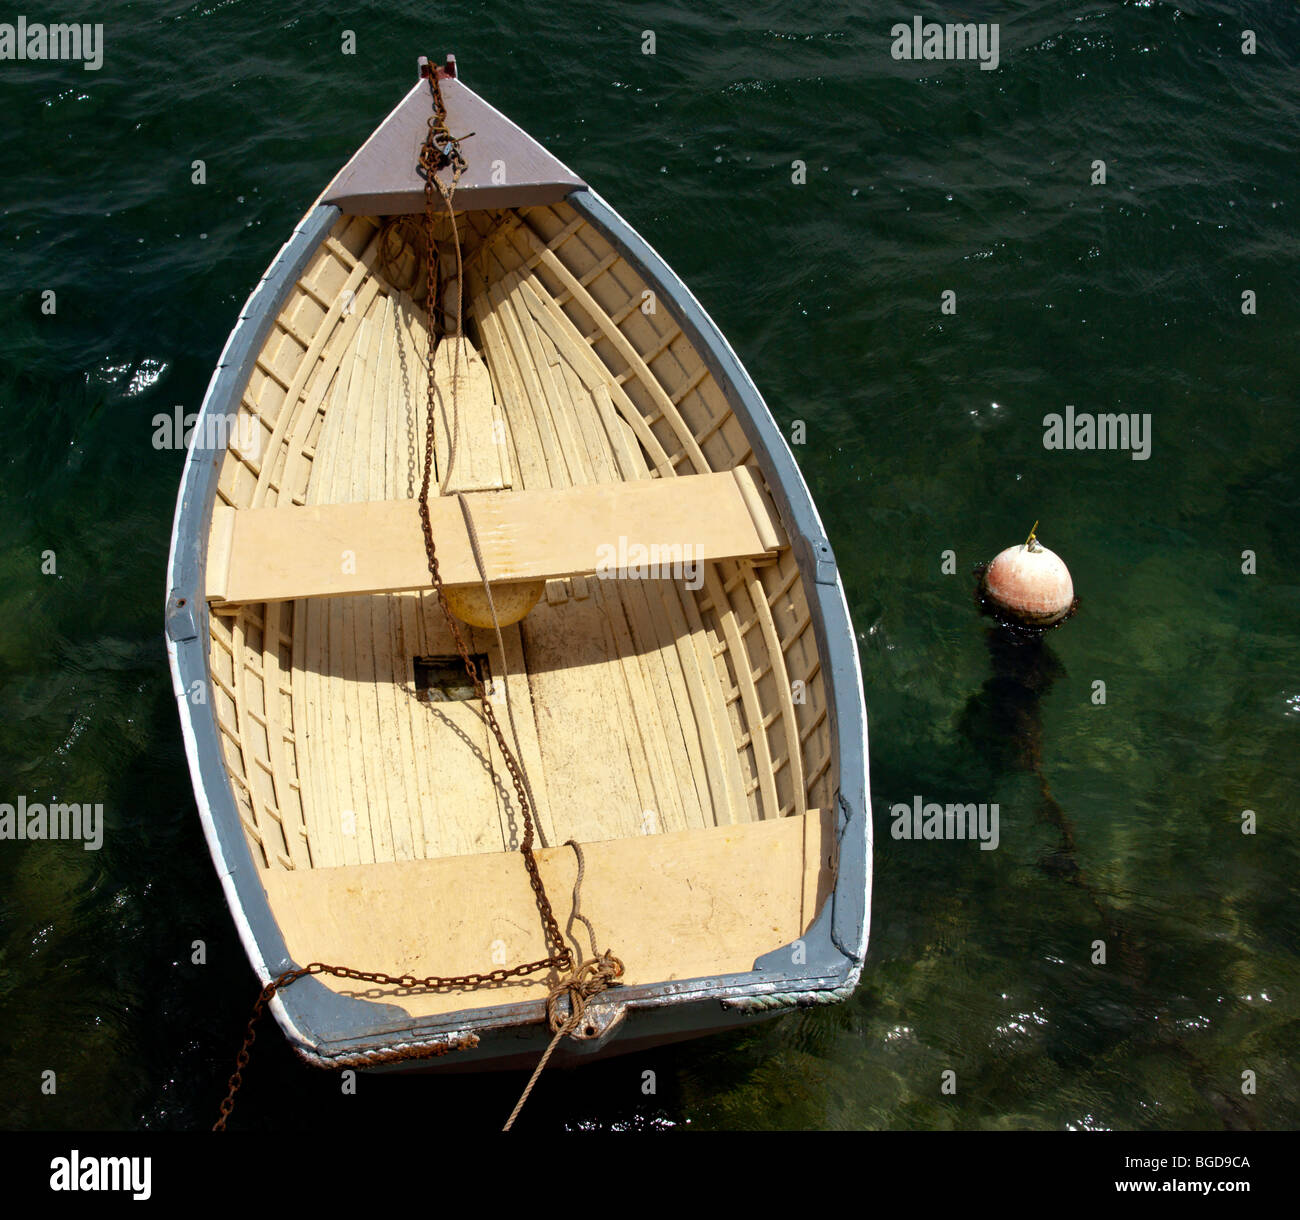 Ein Ruderboot auf dem Wasser schwimmen. Stockfoto